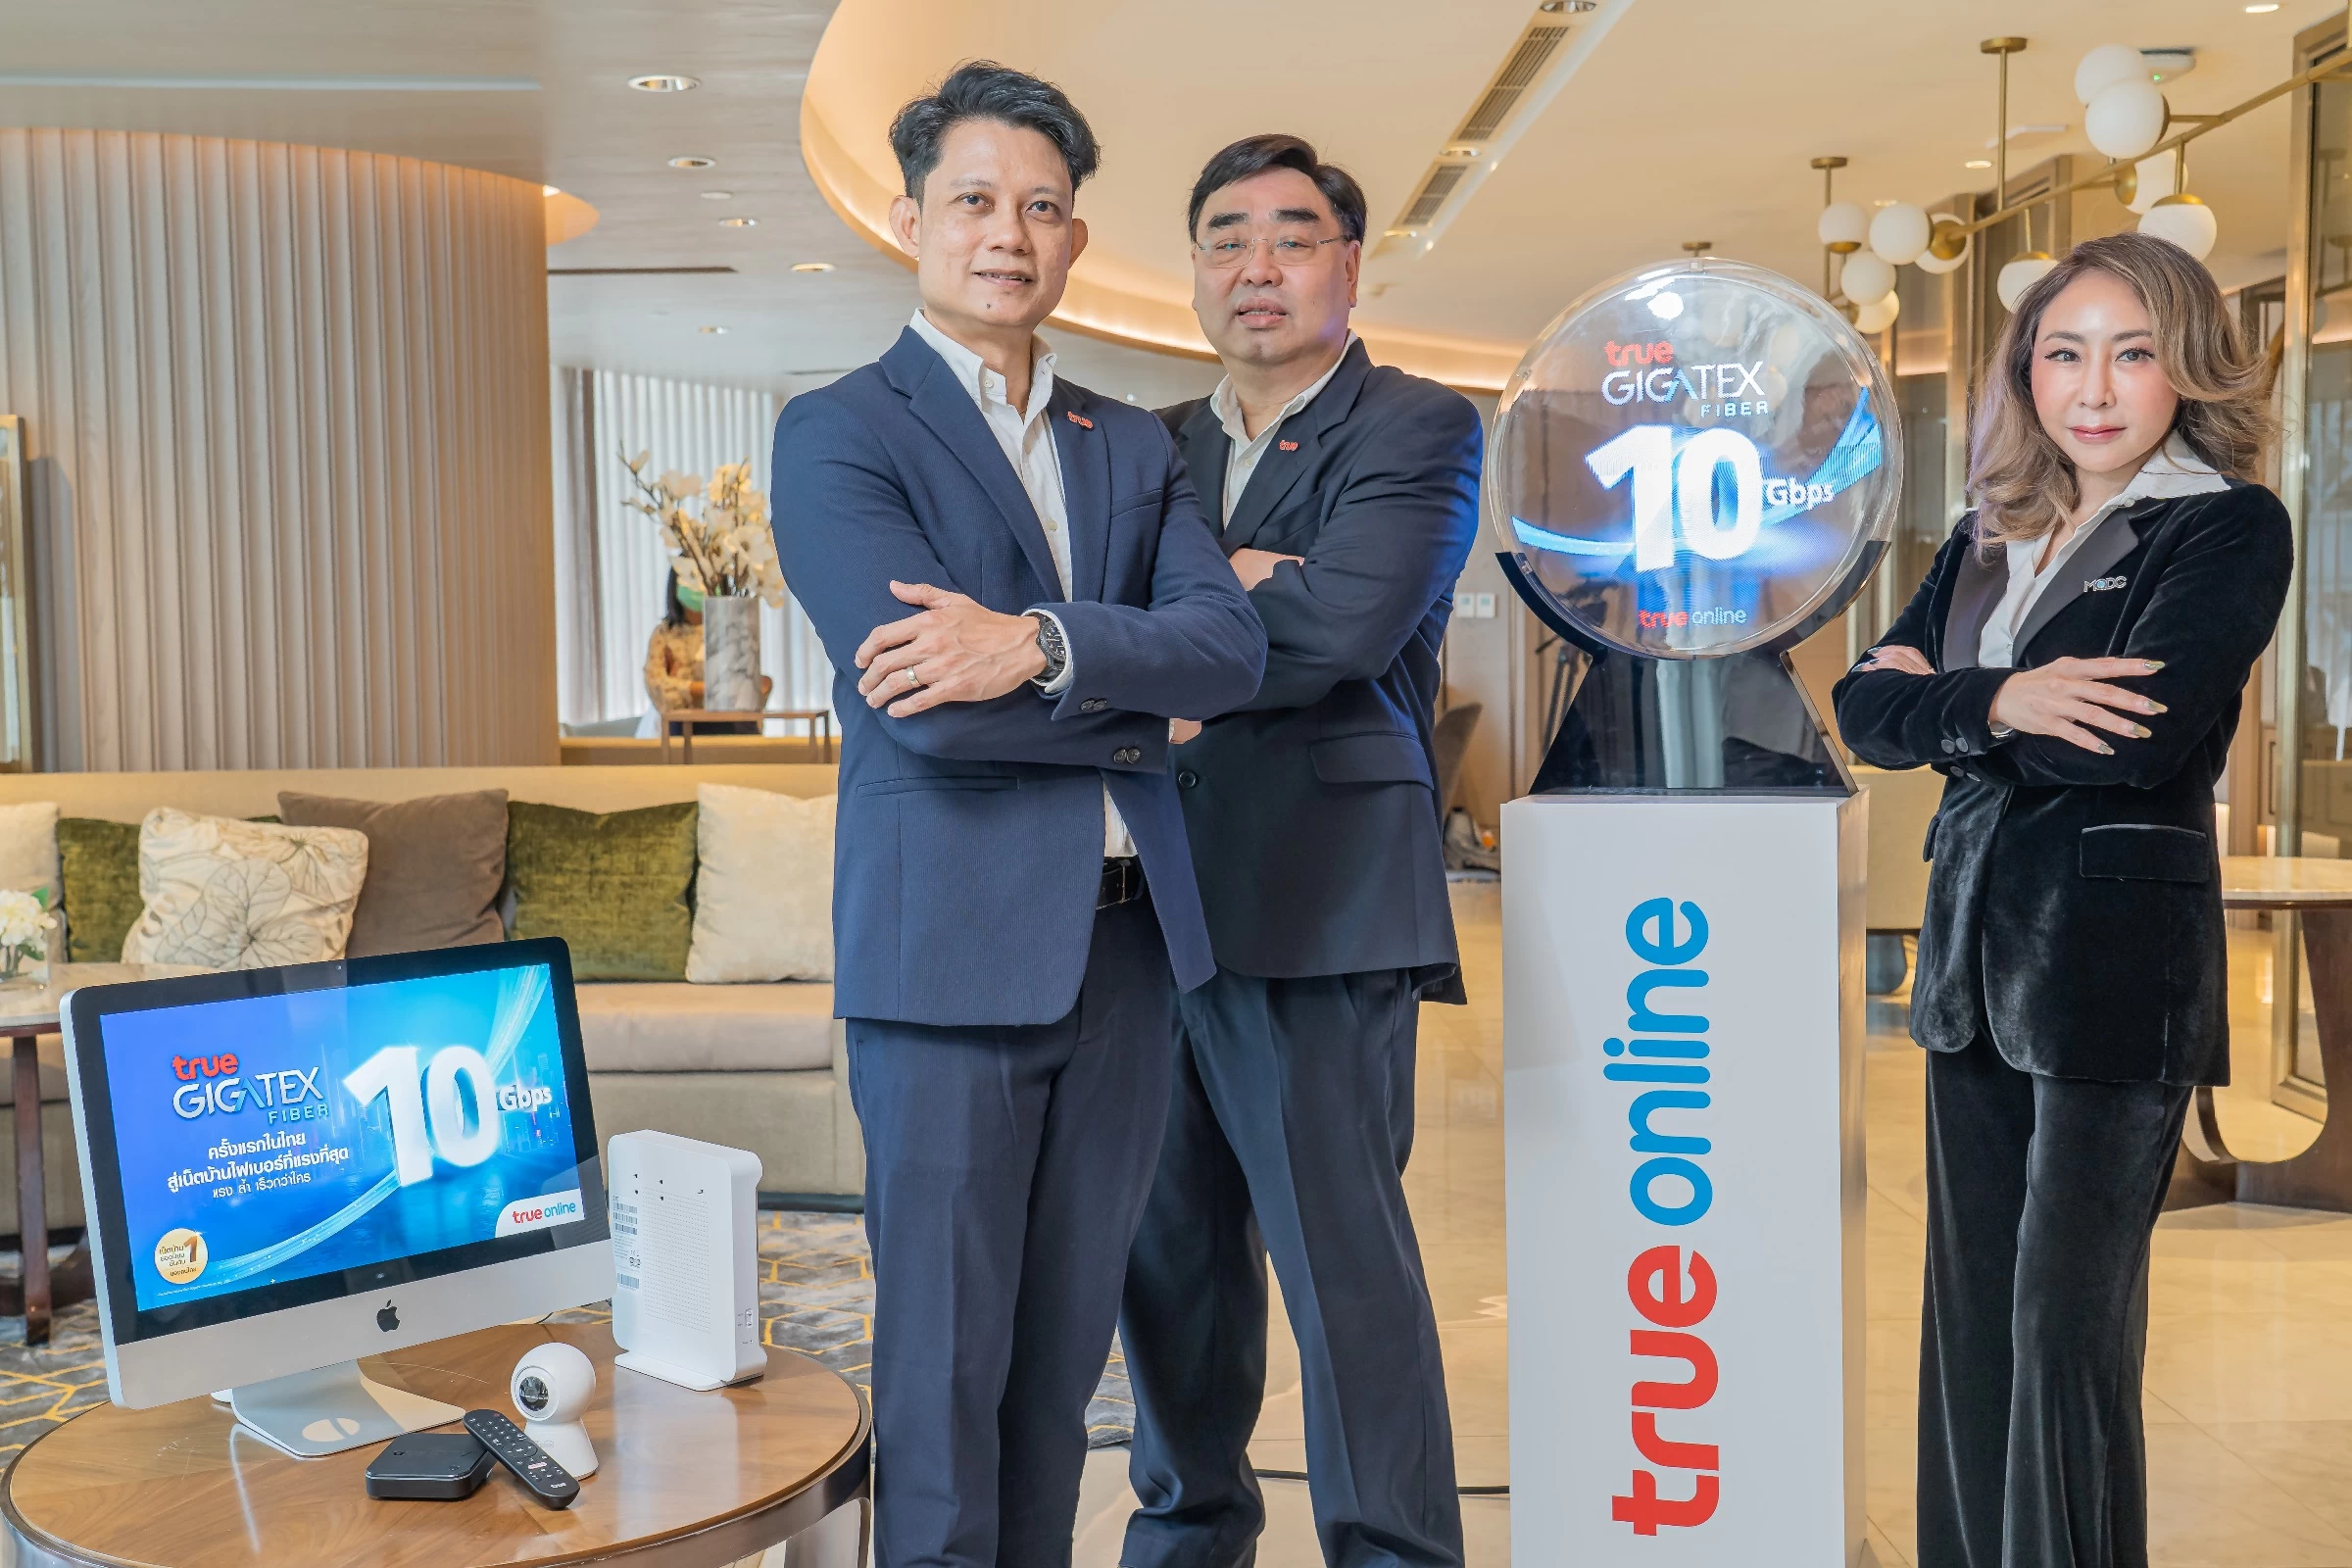 271 2 | True Gigatex Premium 10 Gbps. | ทรูออนไลน์ เจาะกลุ่มลูกค้าไฮเอ็นเน็ตบ้านแรงสุด10 Gbps ในไทย